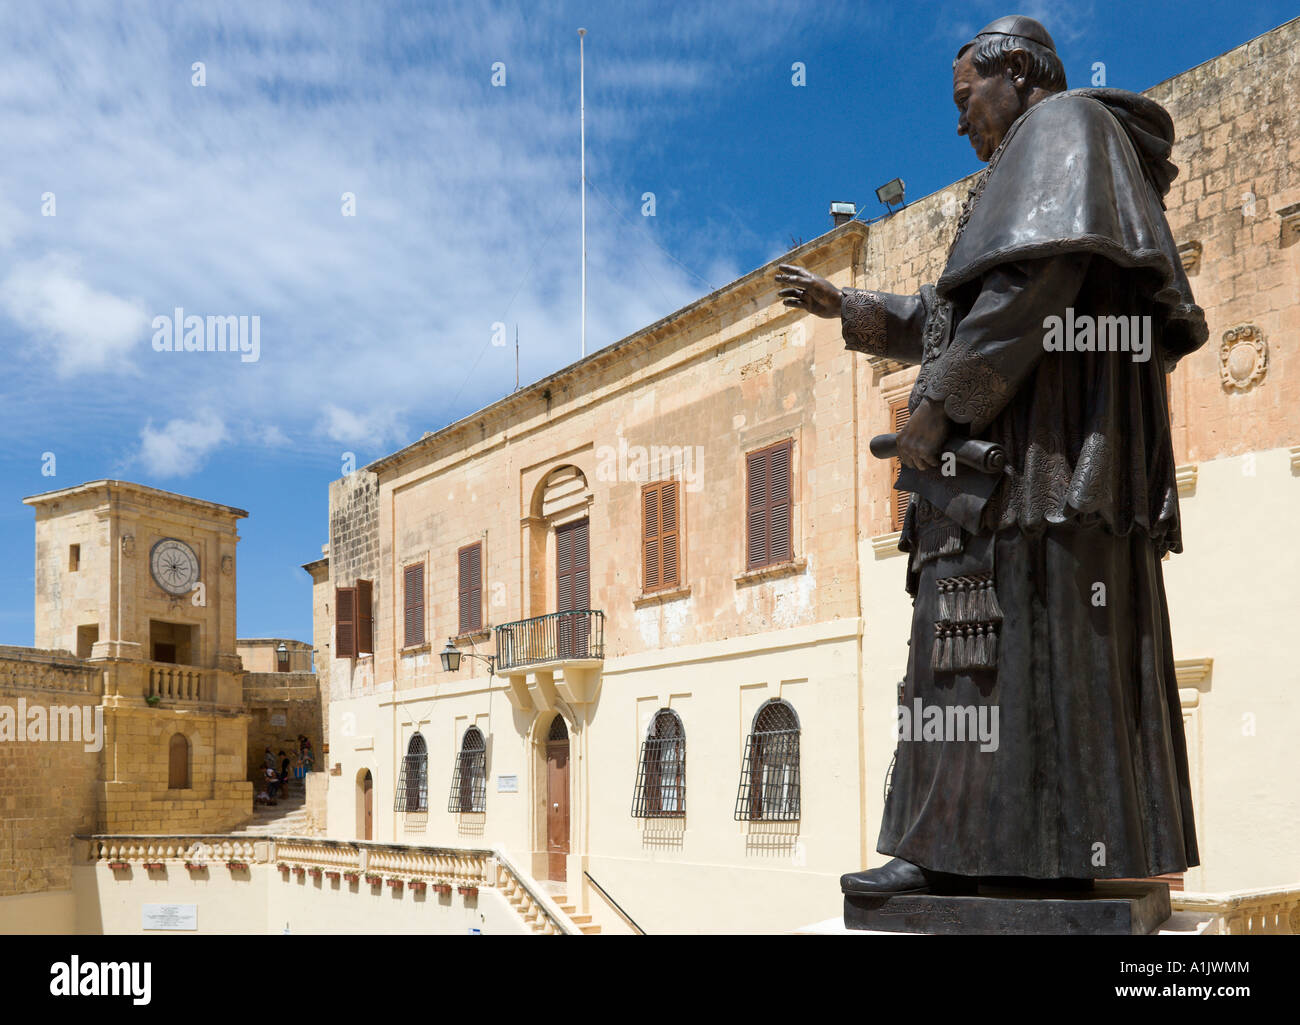 Statue en bronze du Pape Pie IX à l'extérieur de la cathédrale dans la citadelle, Victoria (ou Rabat), Gozo, Malte Banque D'Images